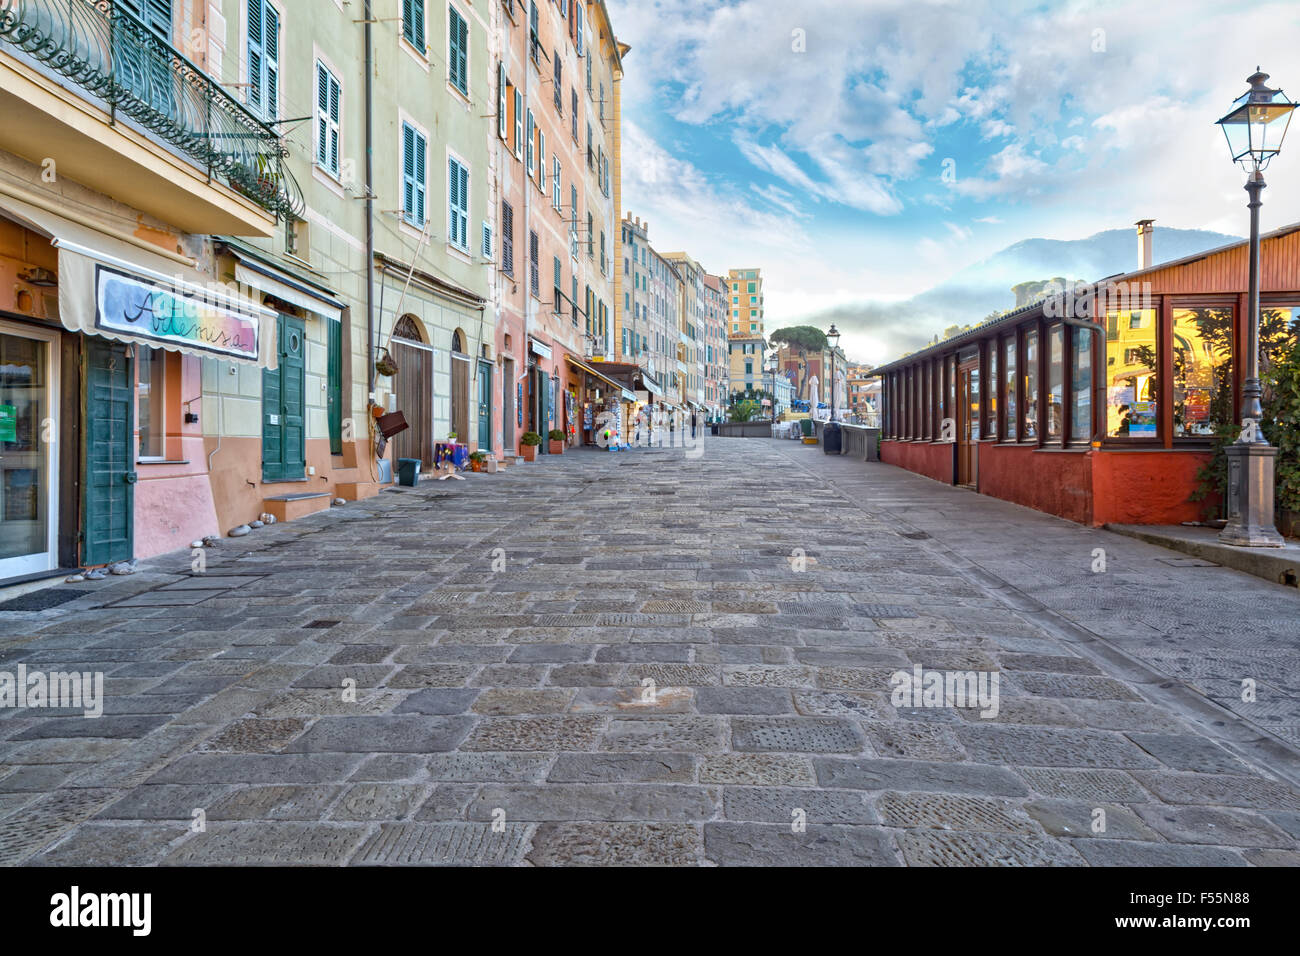 Rues pavées bordées de boutiques et des maisons ou appartements à Camogli, Italie, un village de pêcheurs sur la Portofin Banque D'Images